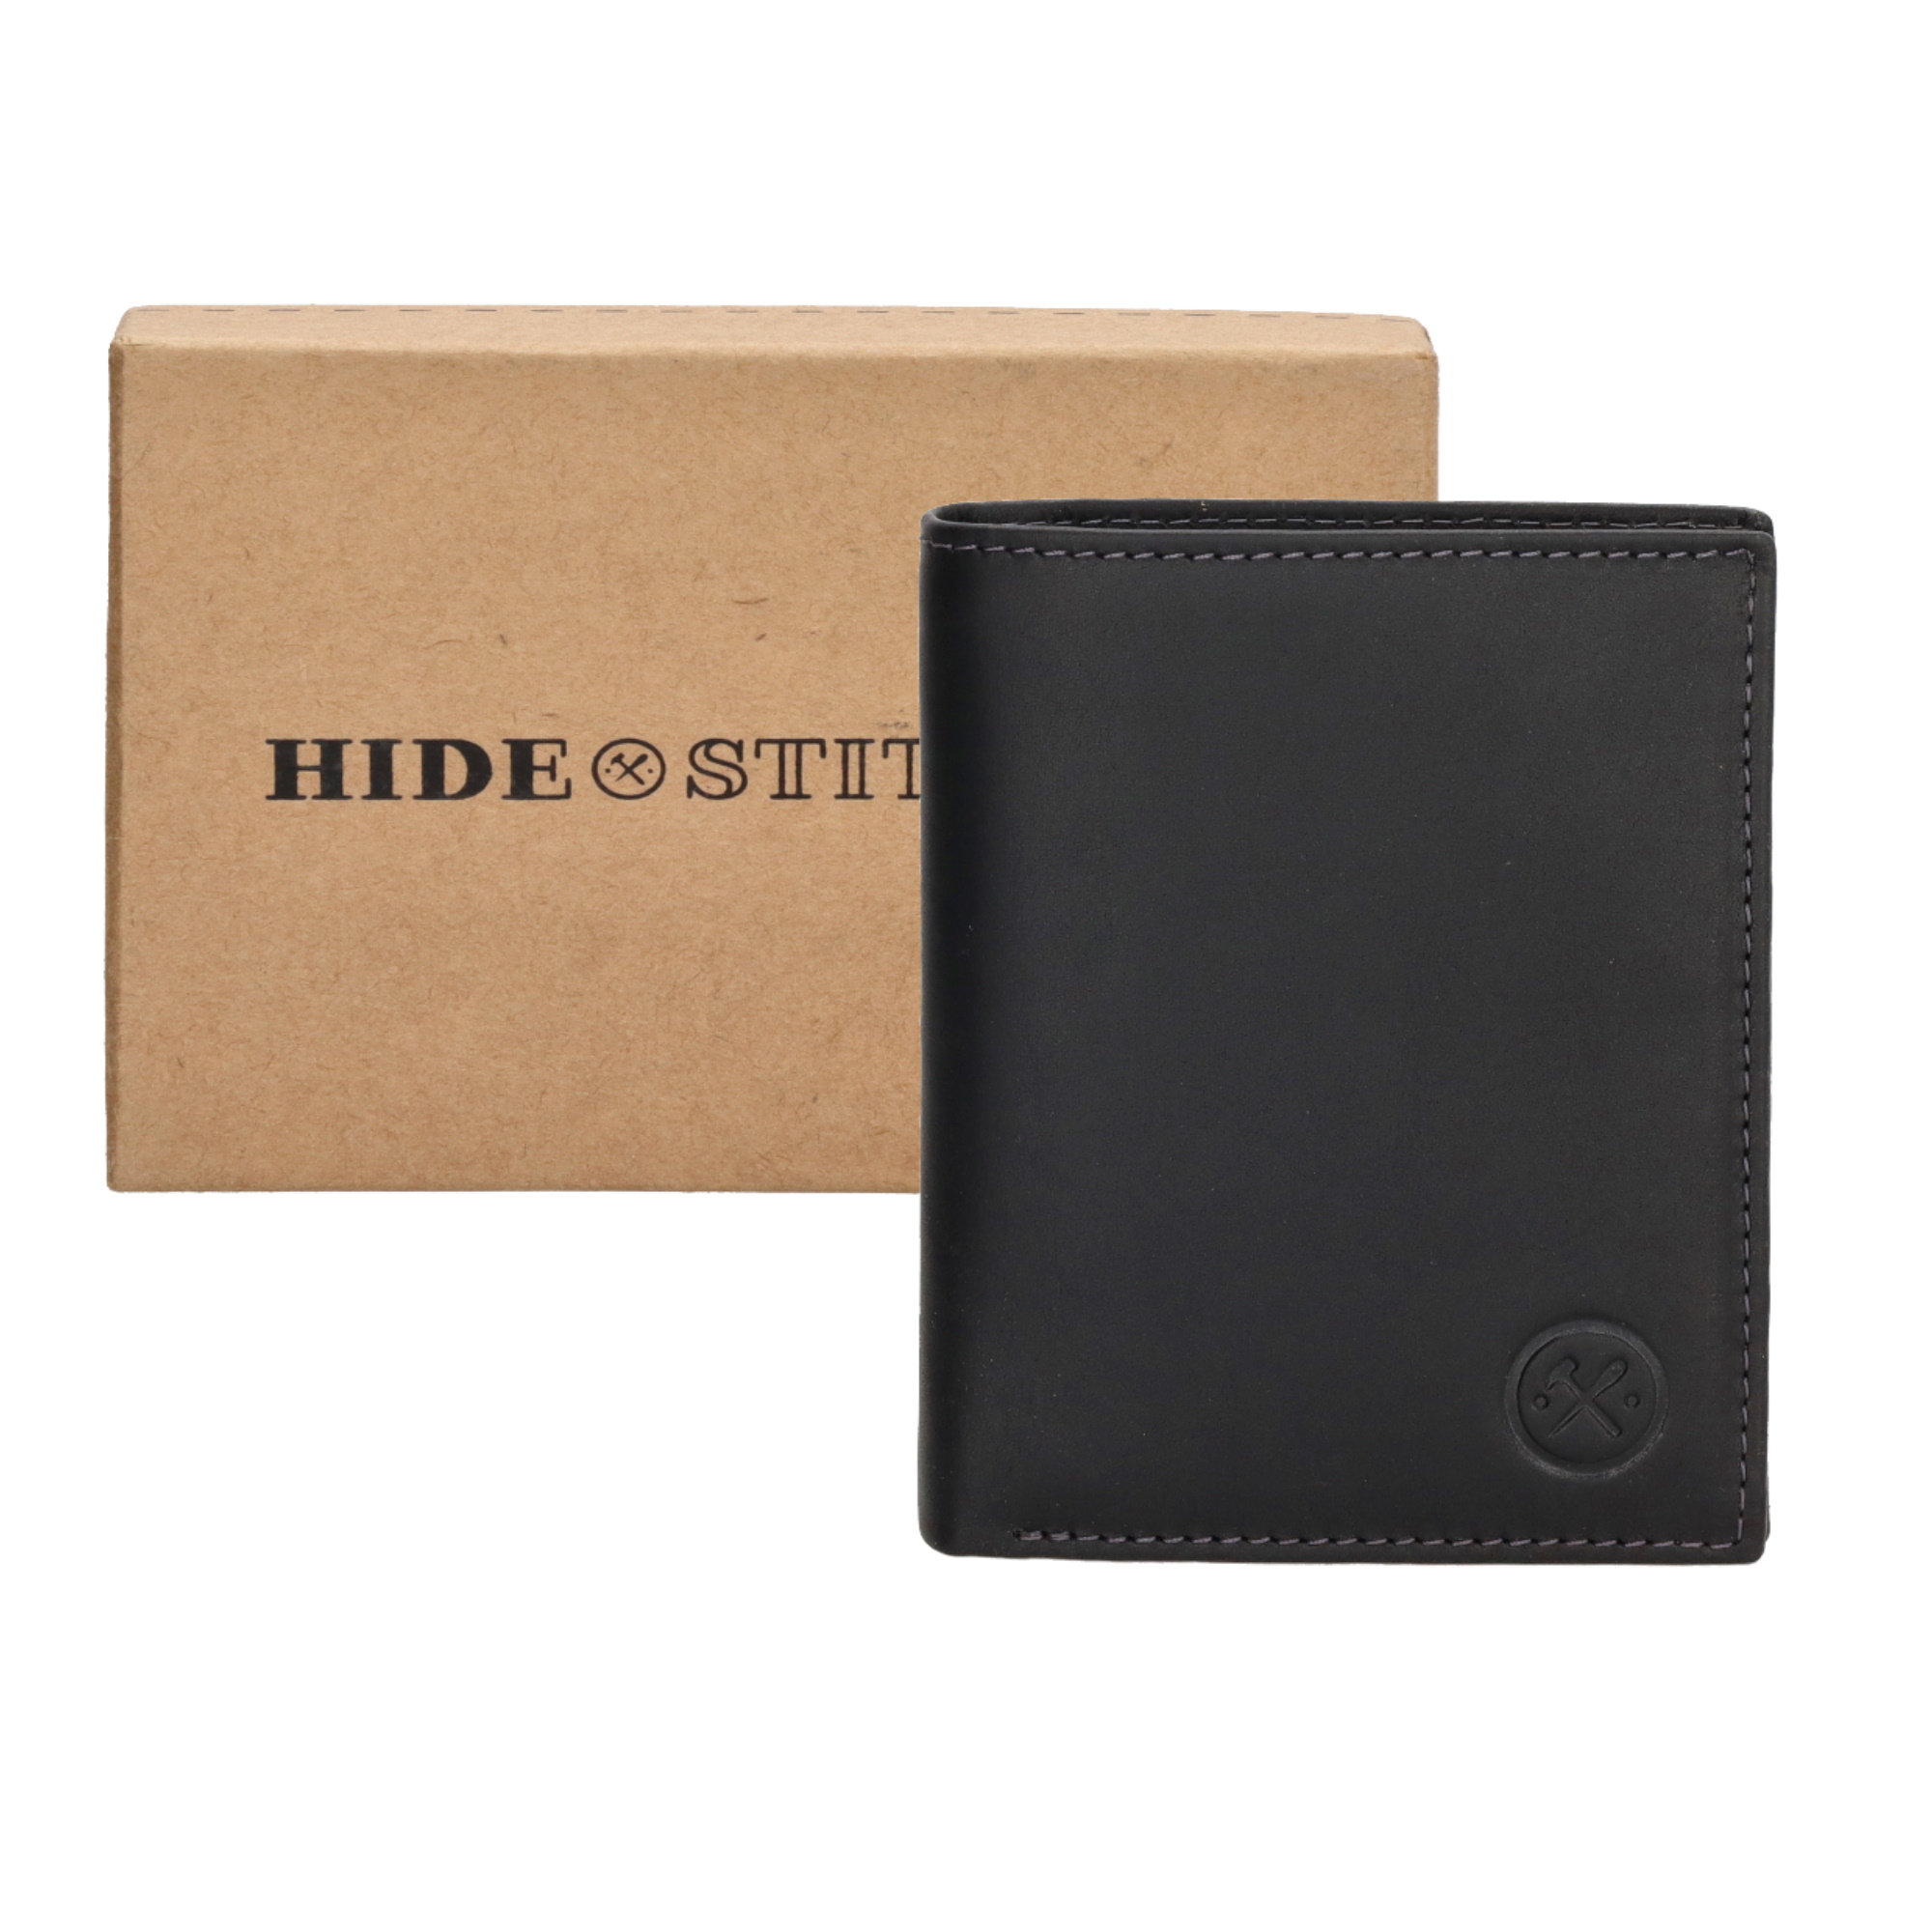 Levně Hide & stitches Japura kožená peněženka v krabičce na výšku - černá